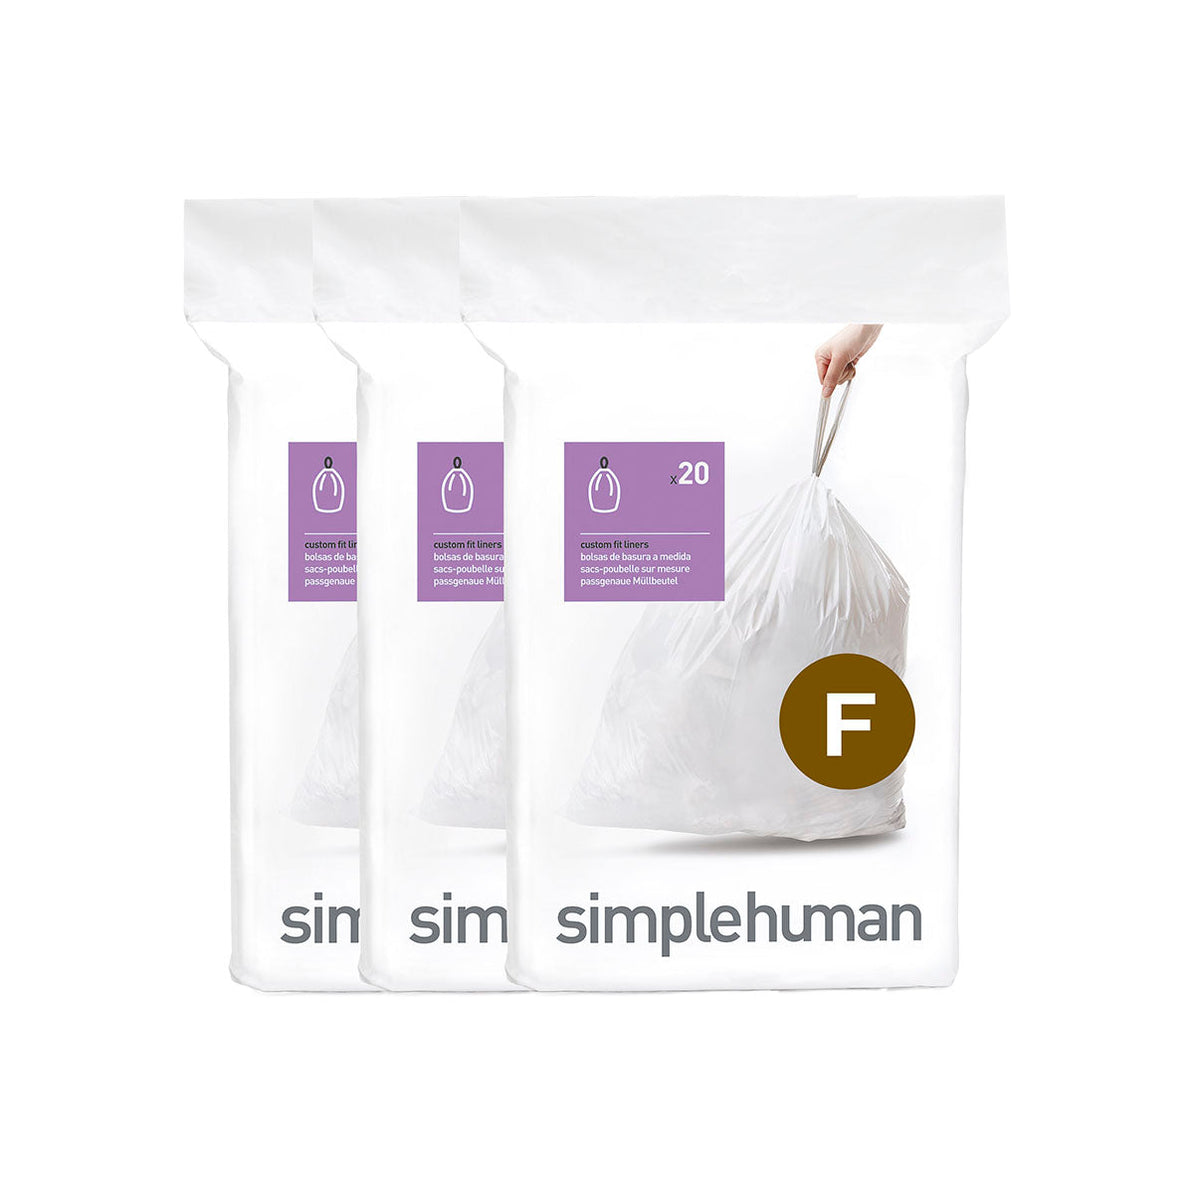 שקיות אשפה לפח 25 ליטר (F) דגם Simplehuman - CW0256 - סימפליומן